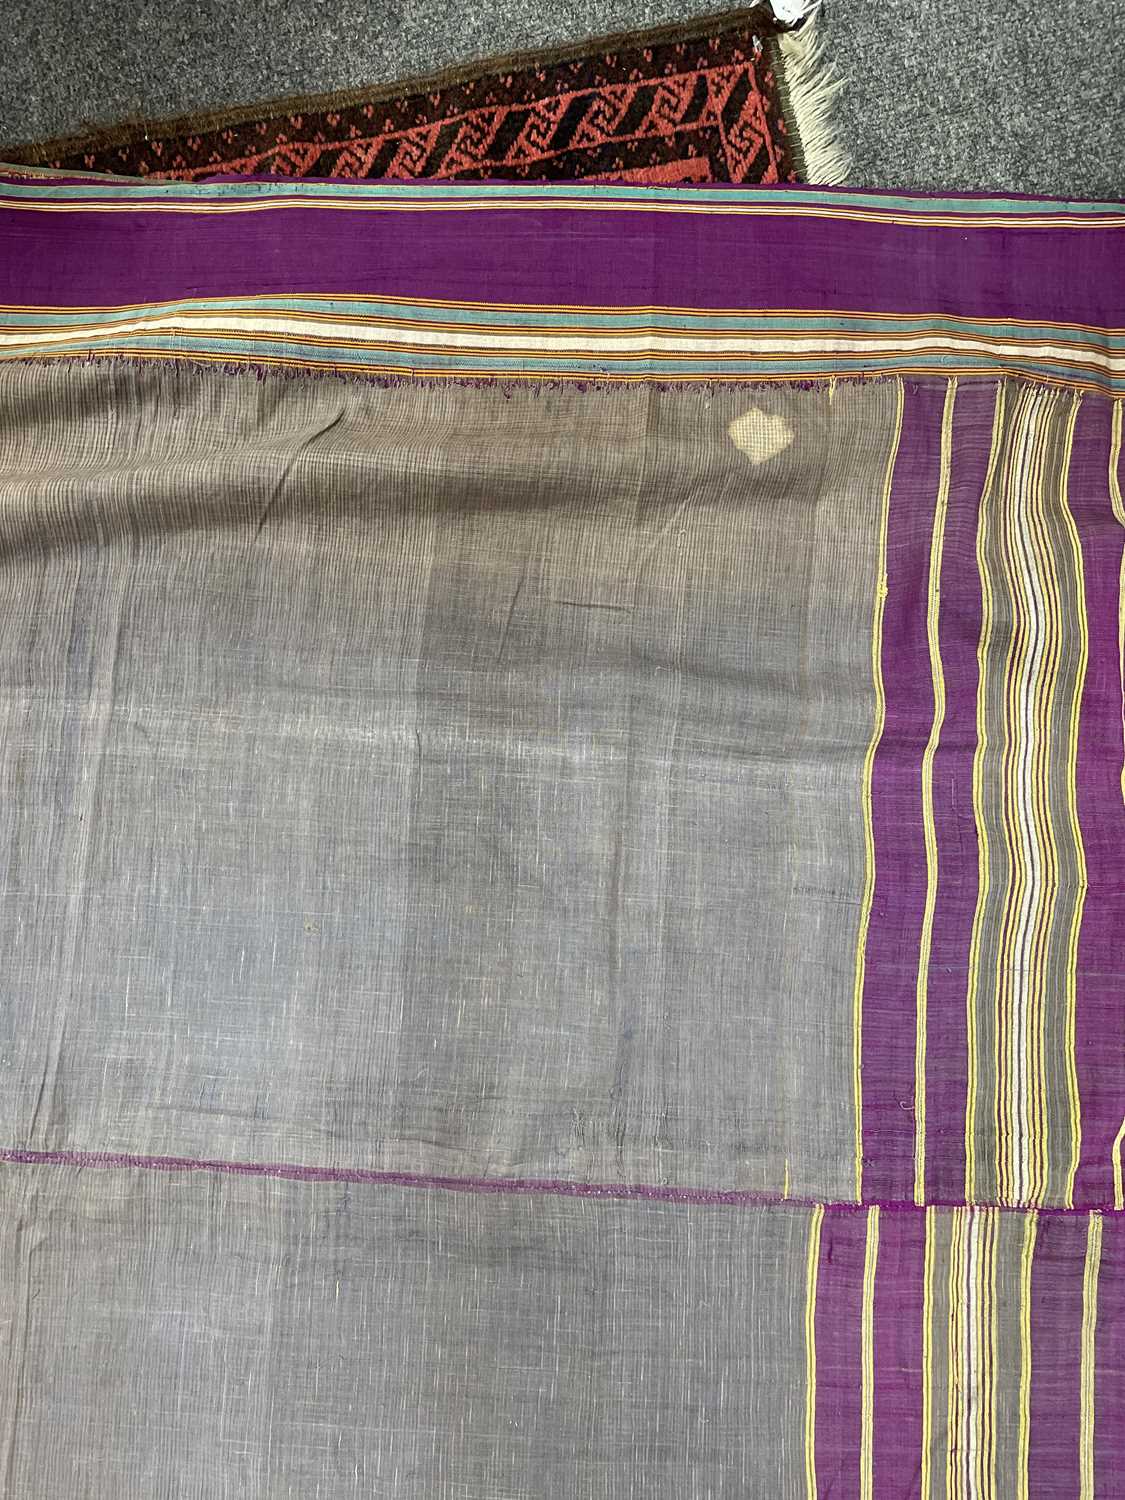 A Kashmir shawl - Image 20 of 20